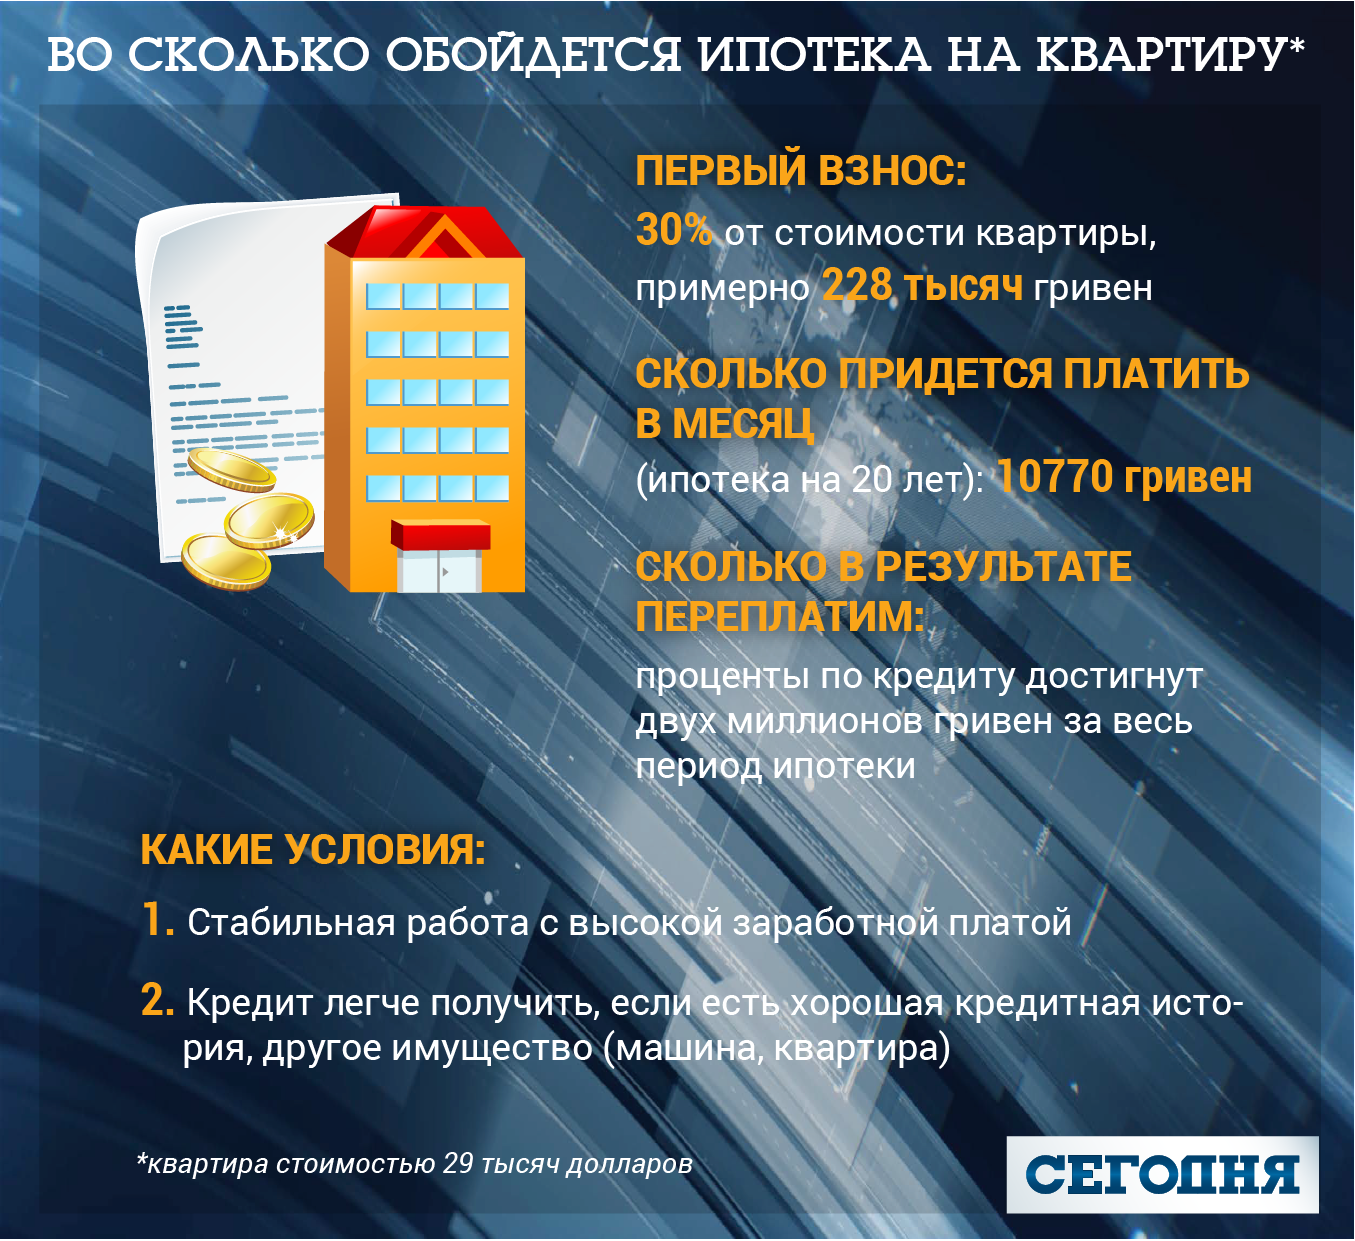 Якщо на решту суми взяти іпотеку під 22% річних на 20 років, щомісяця віддавати банку доведеться 10770 гривень, це більше, ніж середня зарплата в Києві